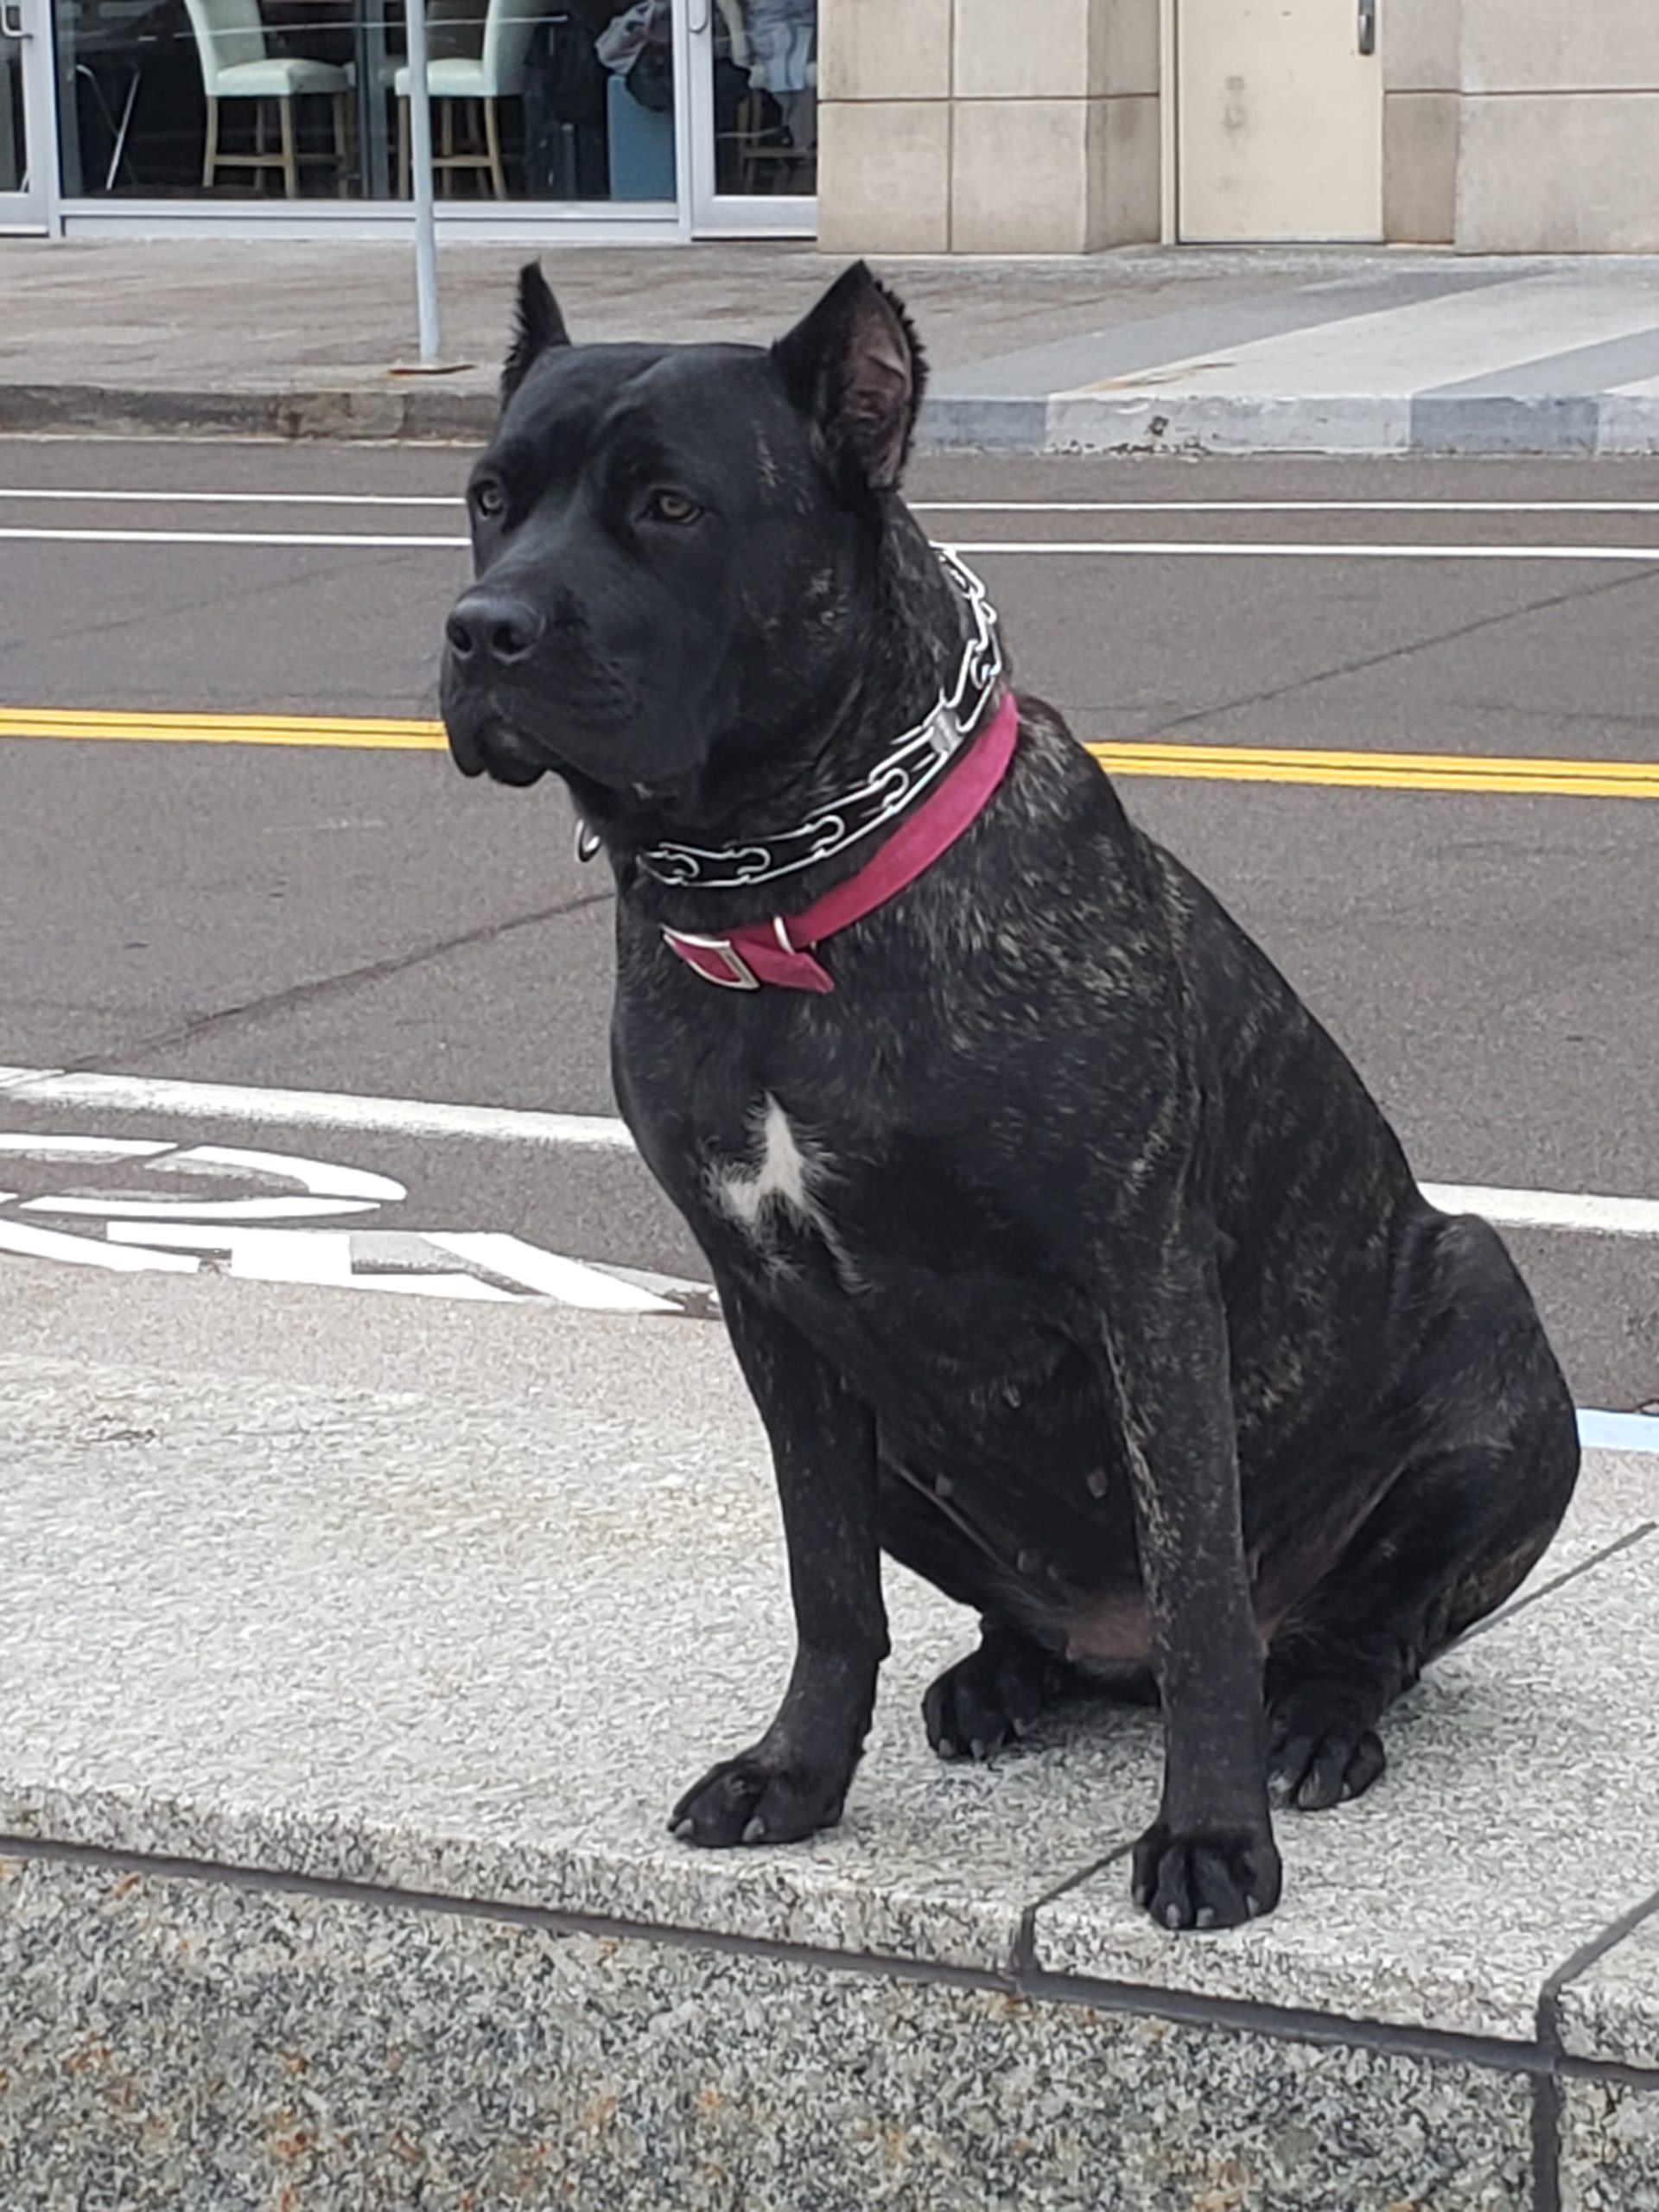 Cane Corso - Sidewalk Dog